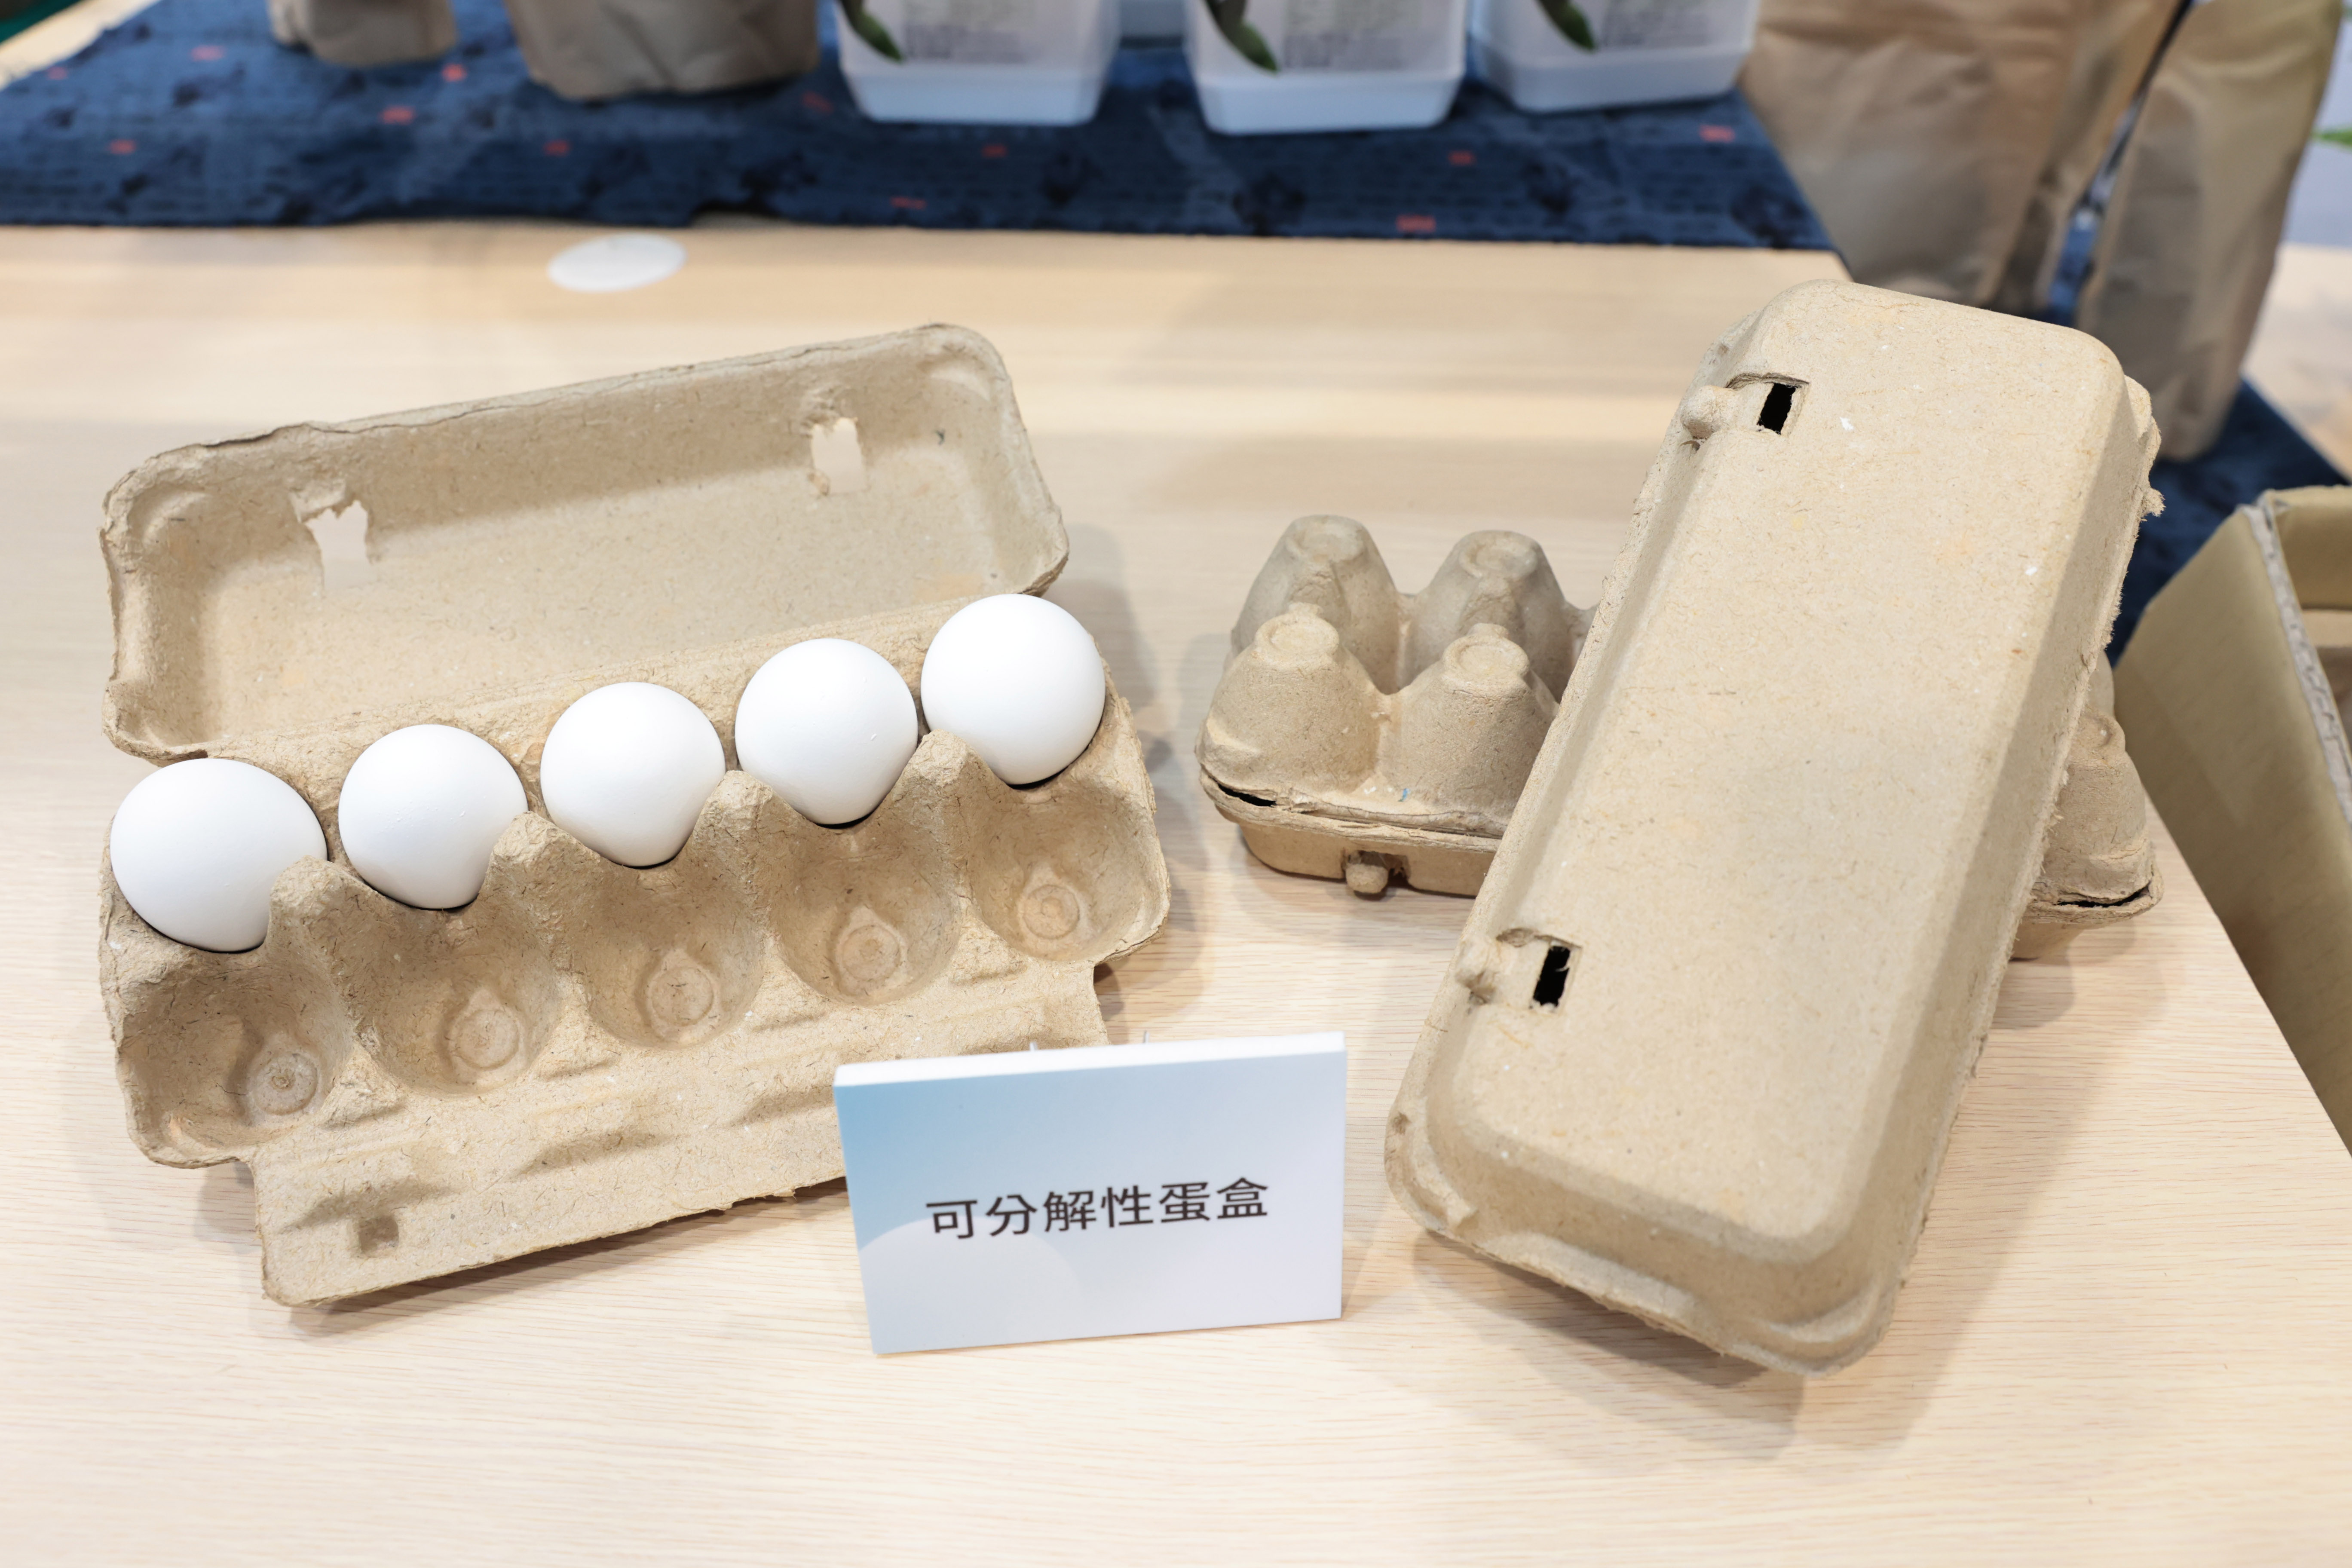 稻稈揉漿物技術加值應用 玩出新創意